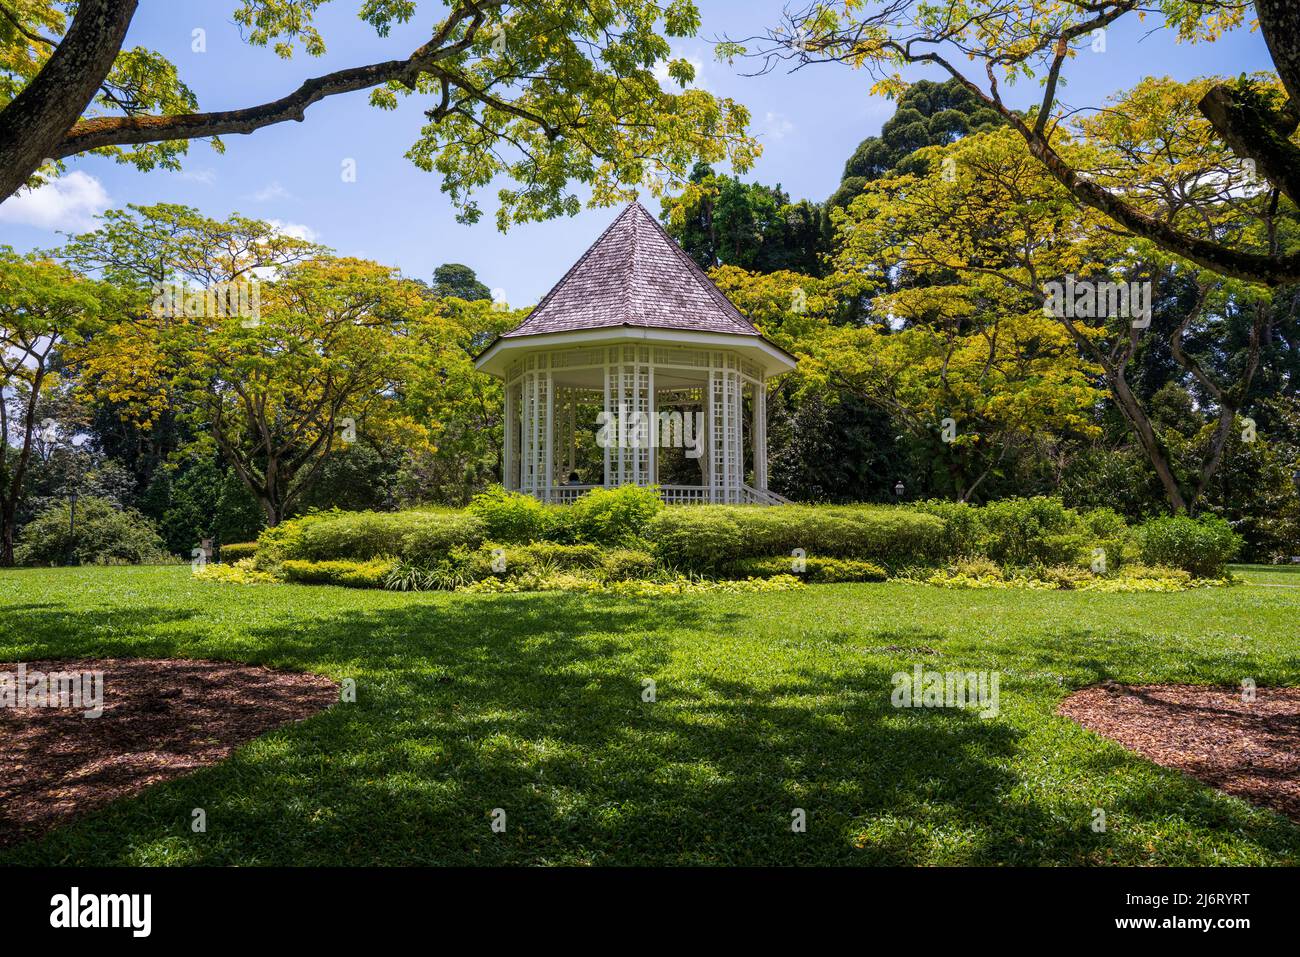 Dieser achteckige Pavillon liegt auf einem Hügel, der als „The Bandstand“ bekannt ist, und wurde 1930 errichtet und ist eine beliebte Attraktion in den Botanischen Gärten von Singapur. Stockfoto